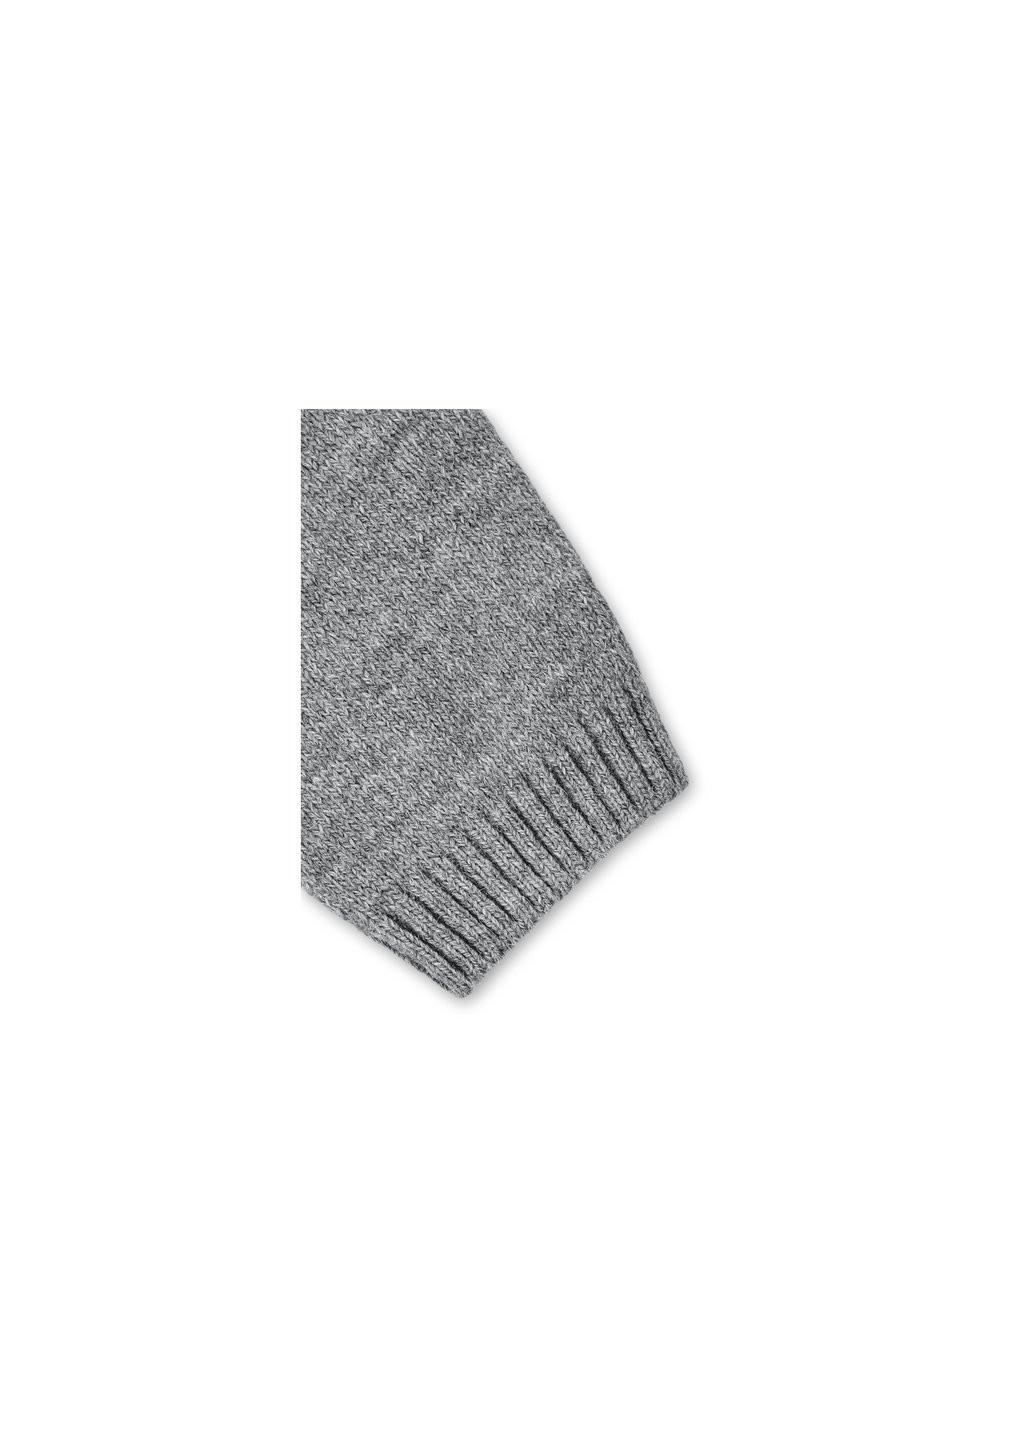 Кофта джемпер серый меланж со звездочками (T-104-98G-gray) Breeze (257208210)